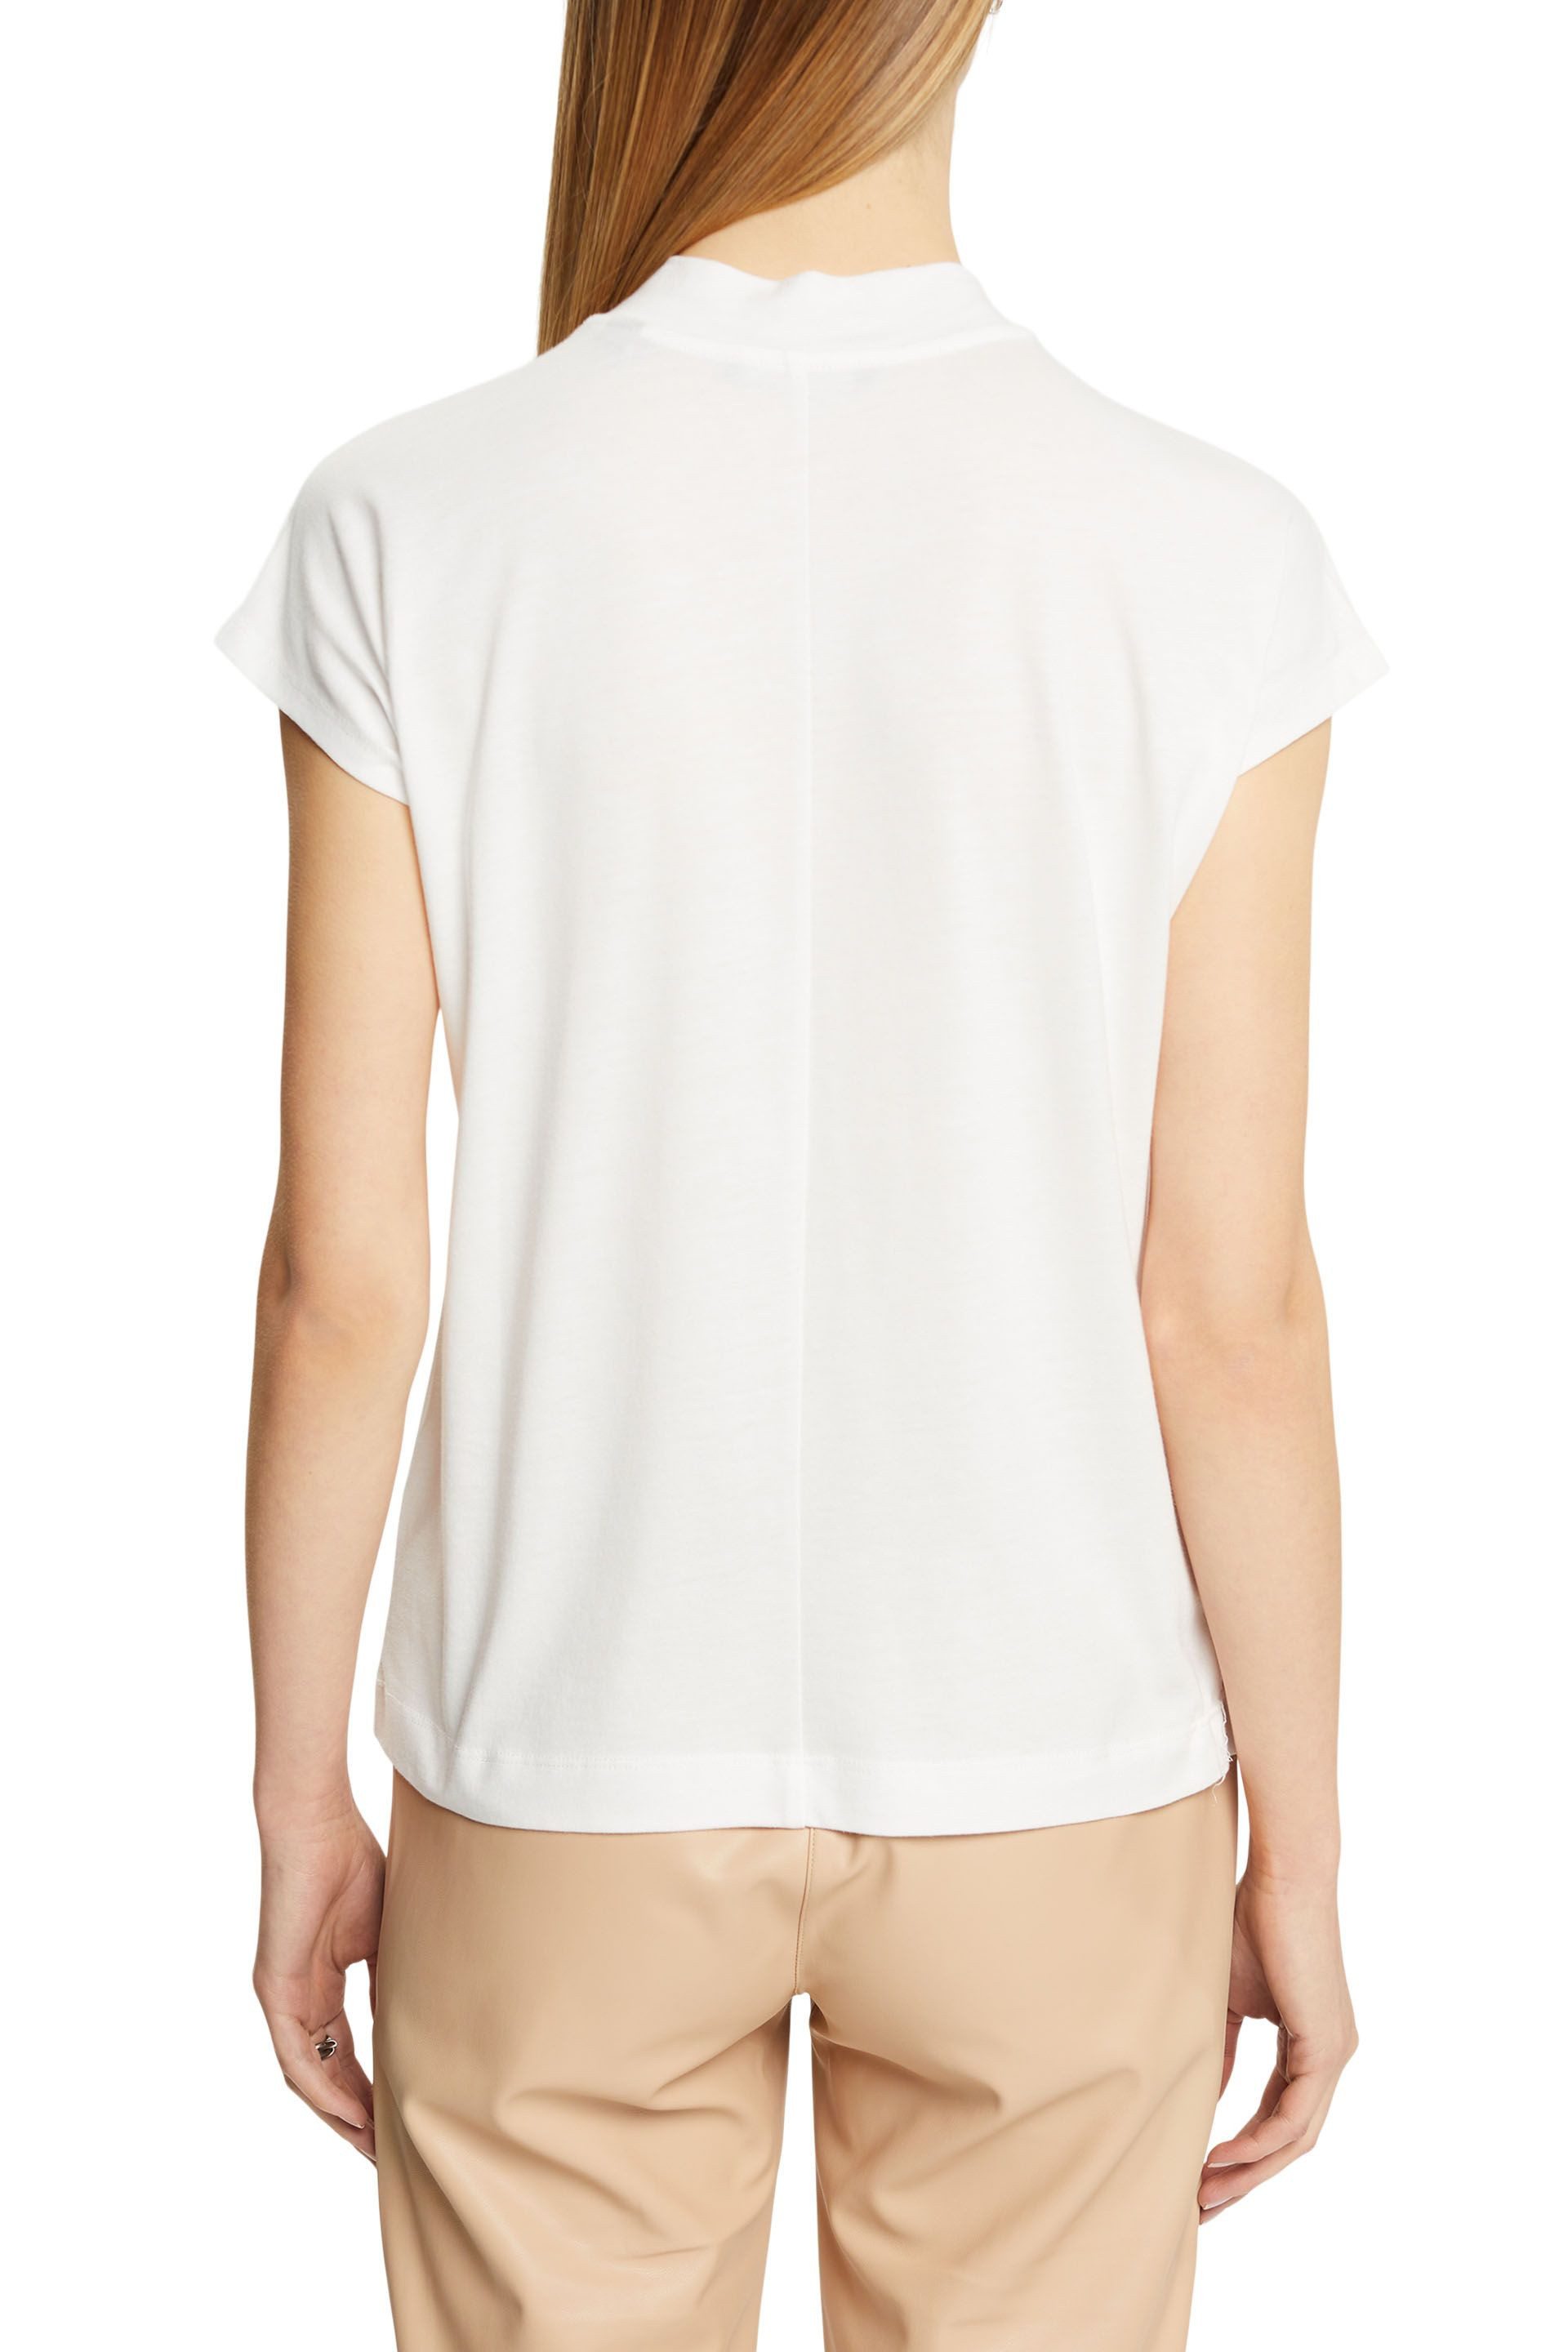 Esprit - T-shirt con paillettes, Bianco, large image number 2